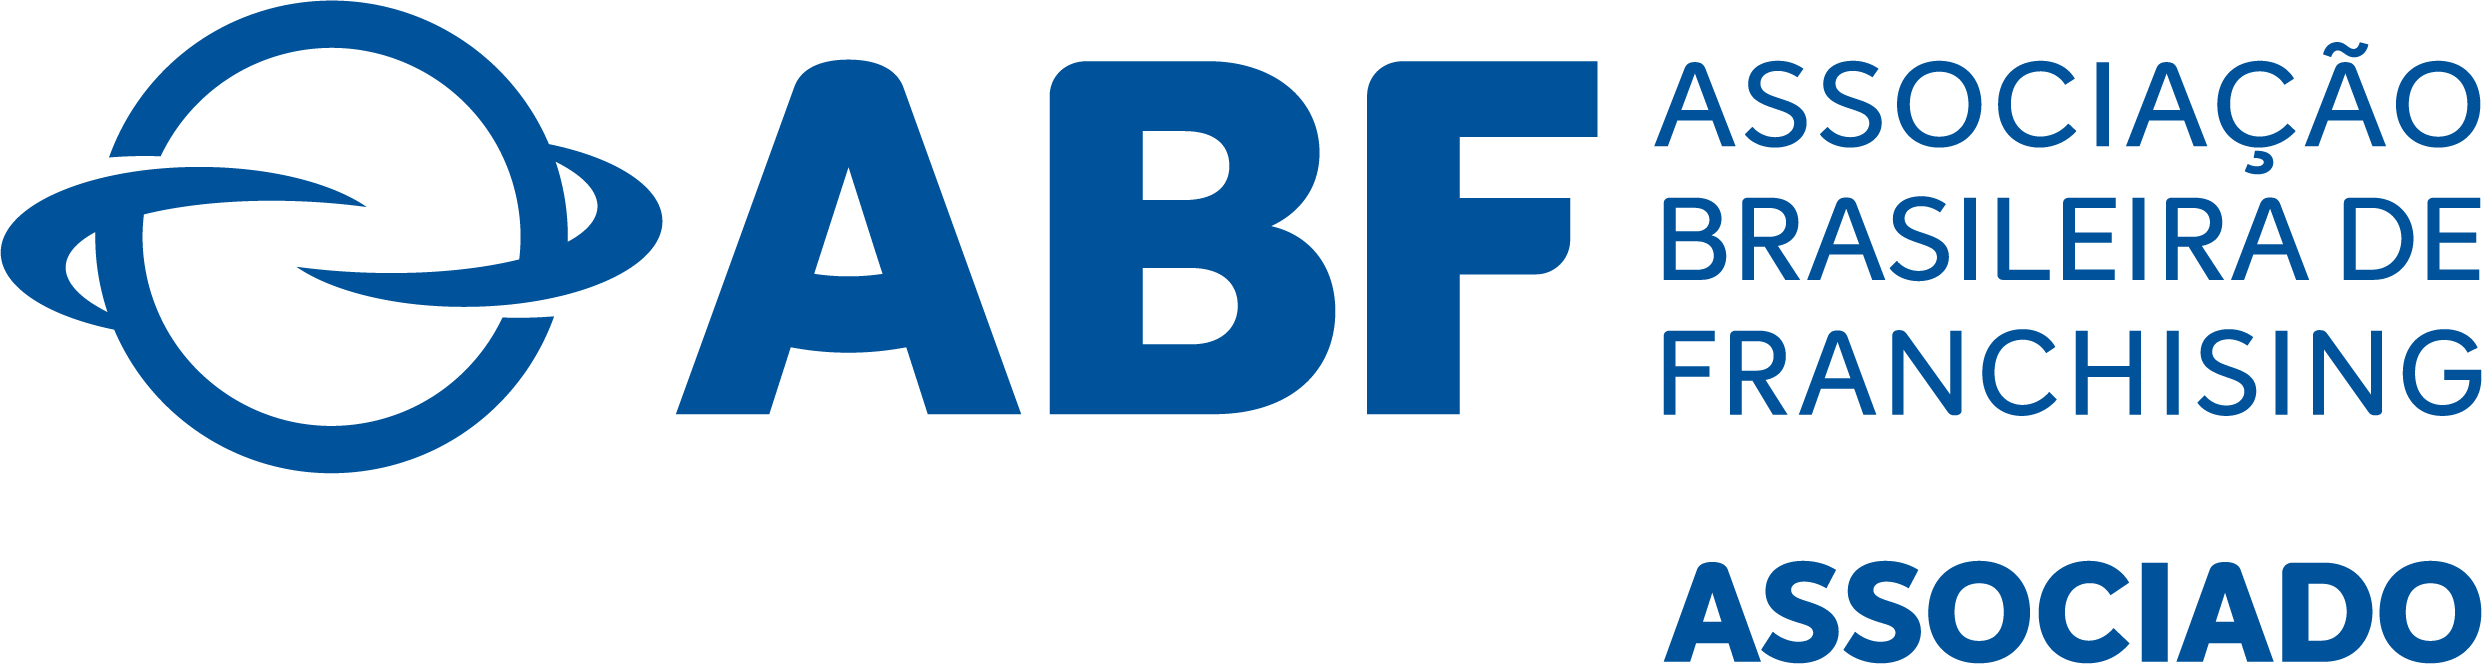 ABF - Associação Brasileira de Franchising ASSOCIADO